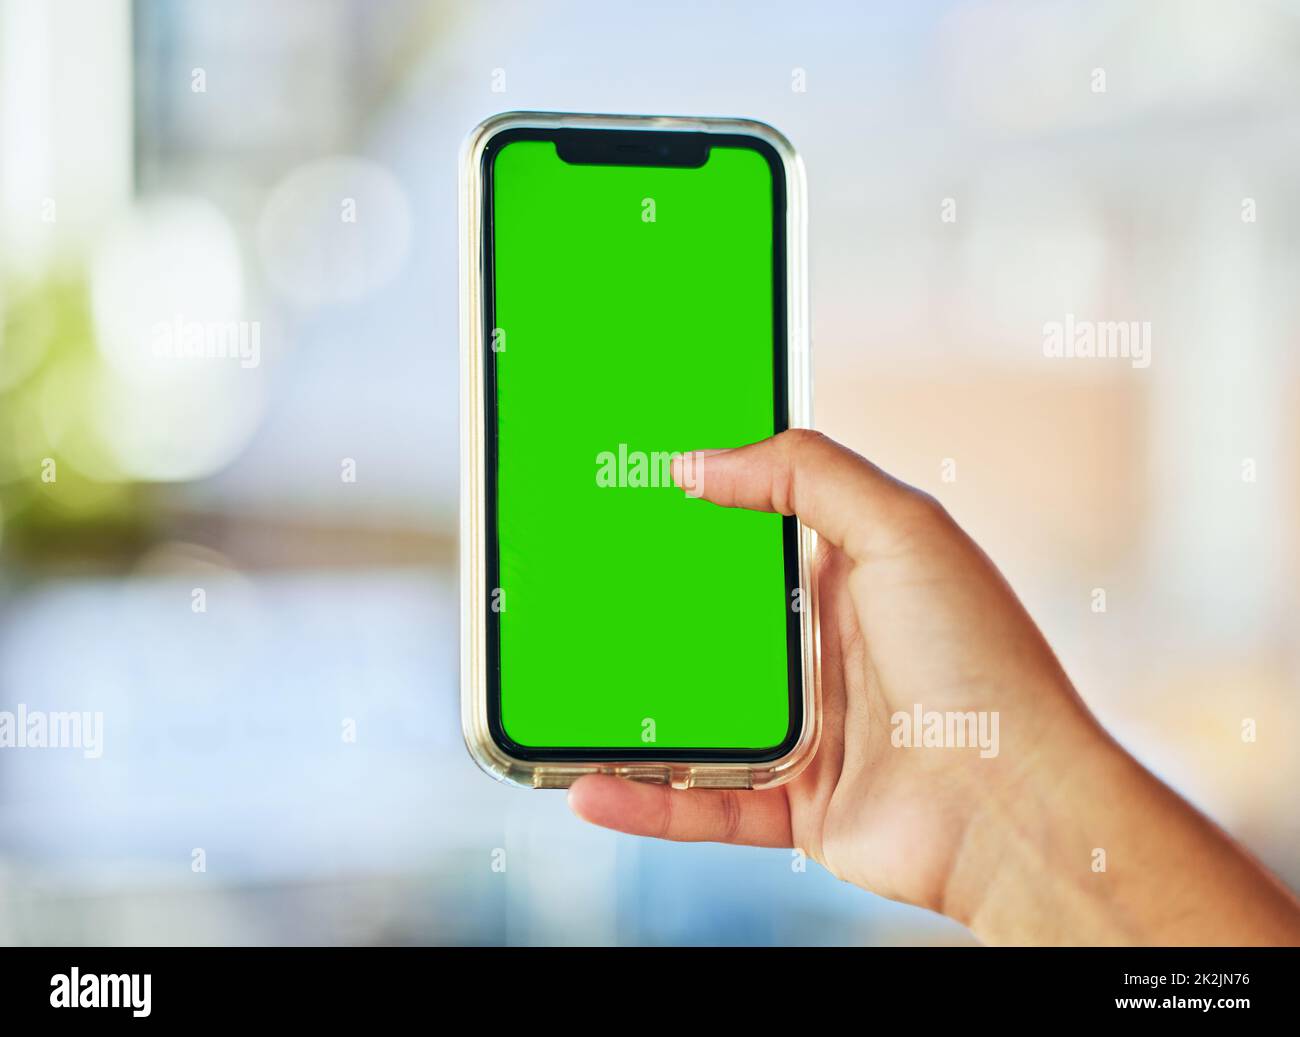 Immer verbunden. Eine junge Frau hält ein Smartphone mit einem grünen Bildschirm vor einem defokussten Hintergrund.. Stockfoto